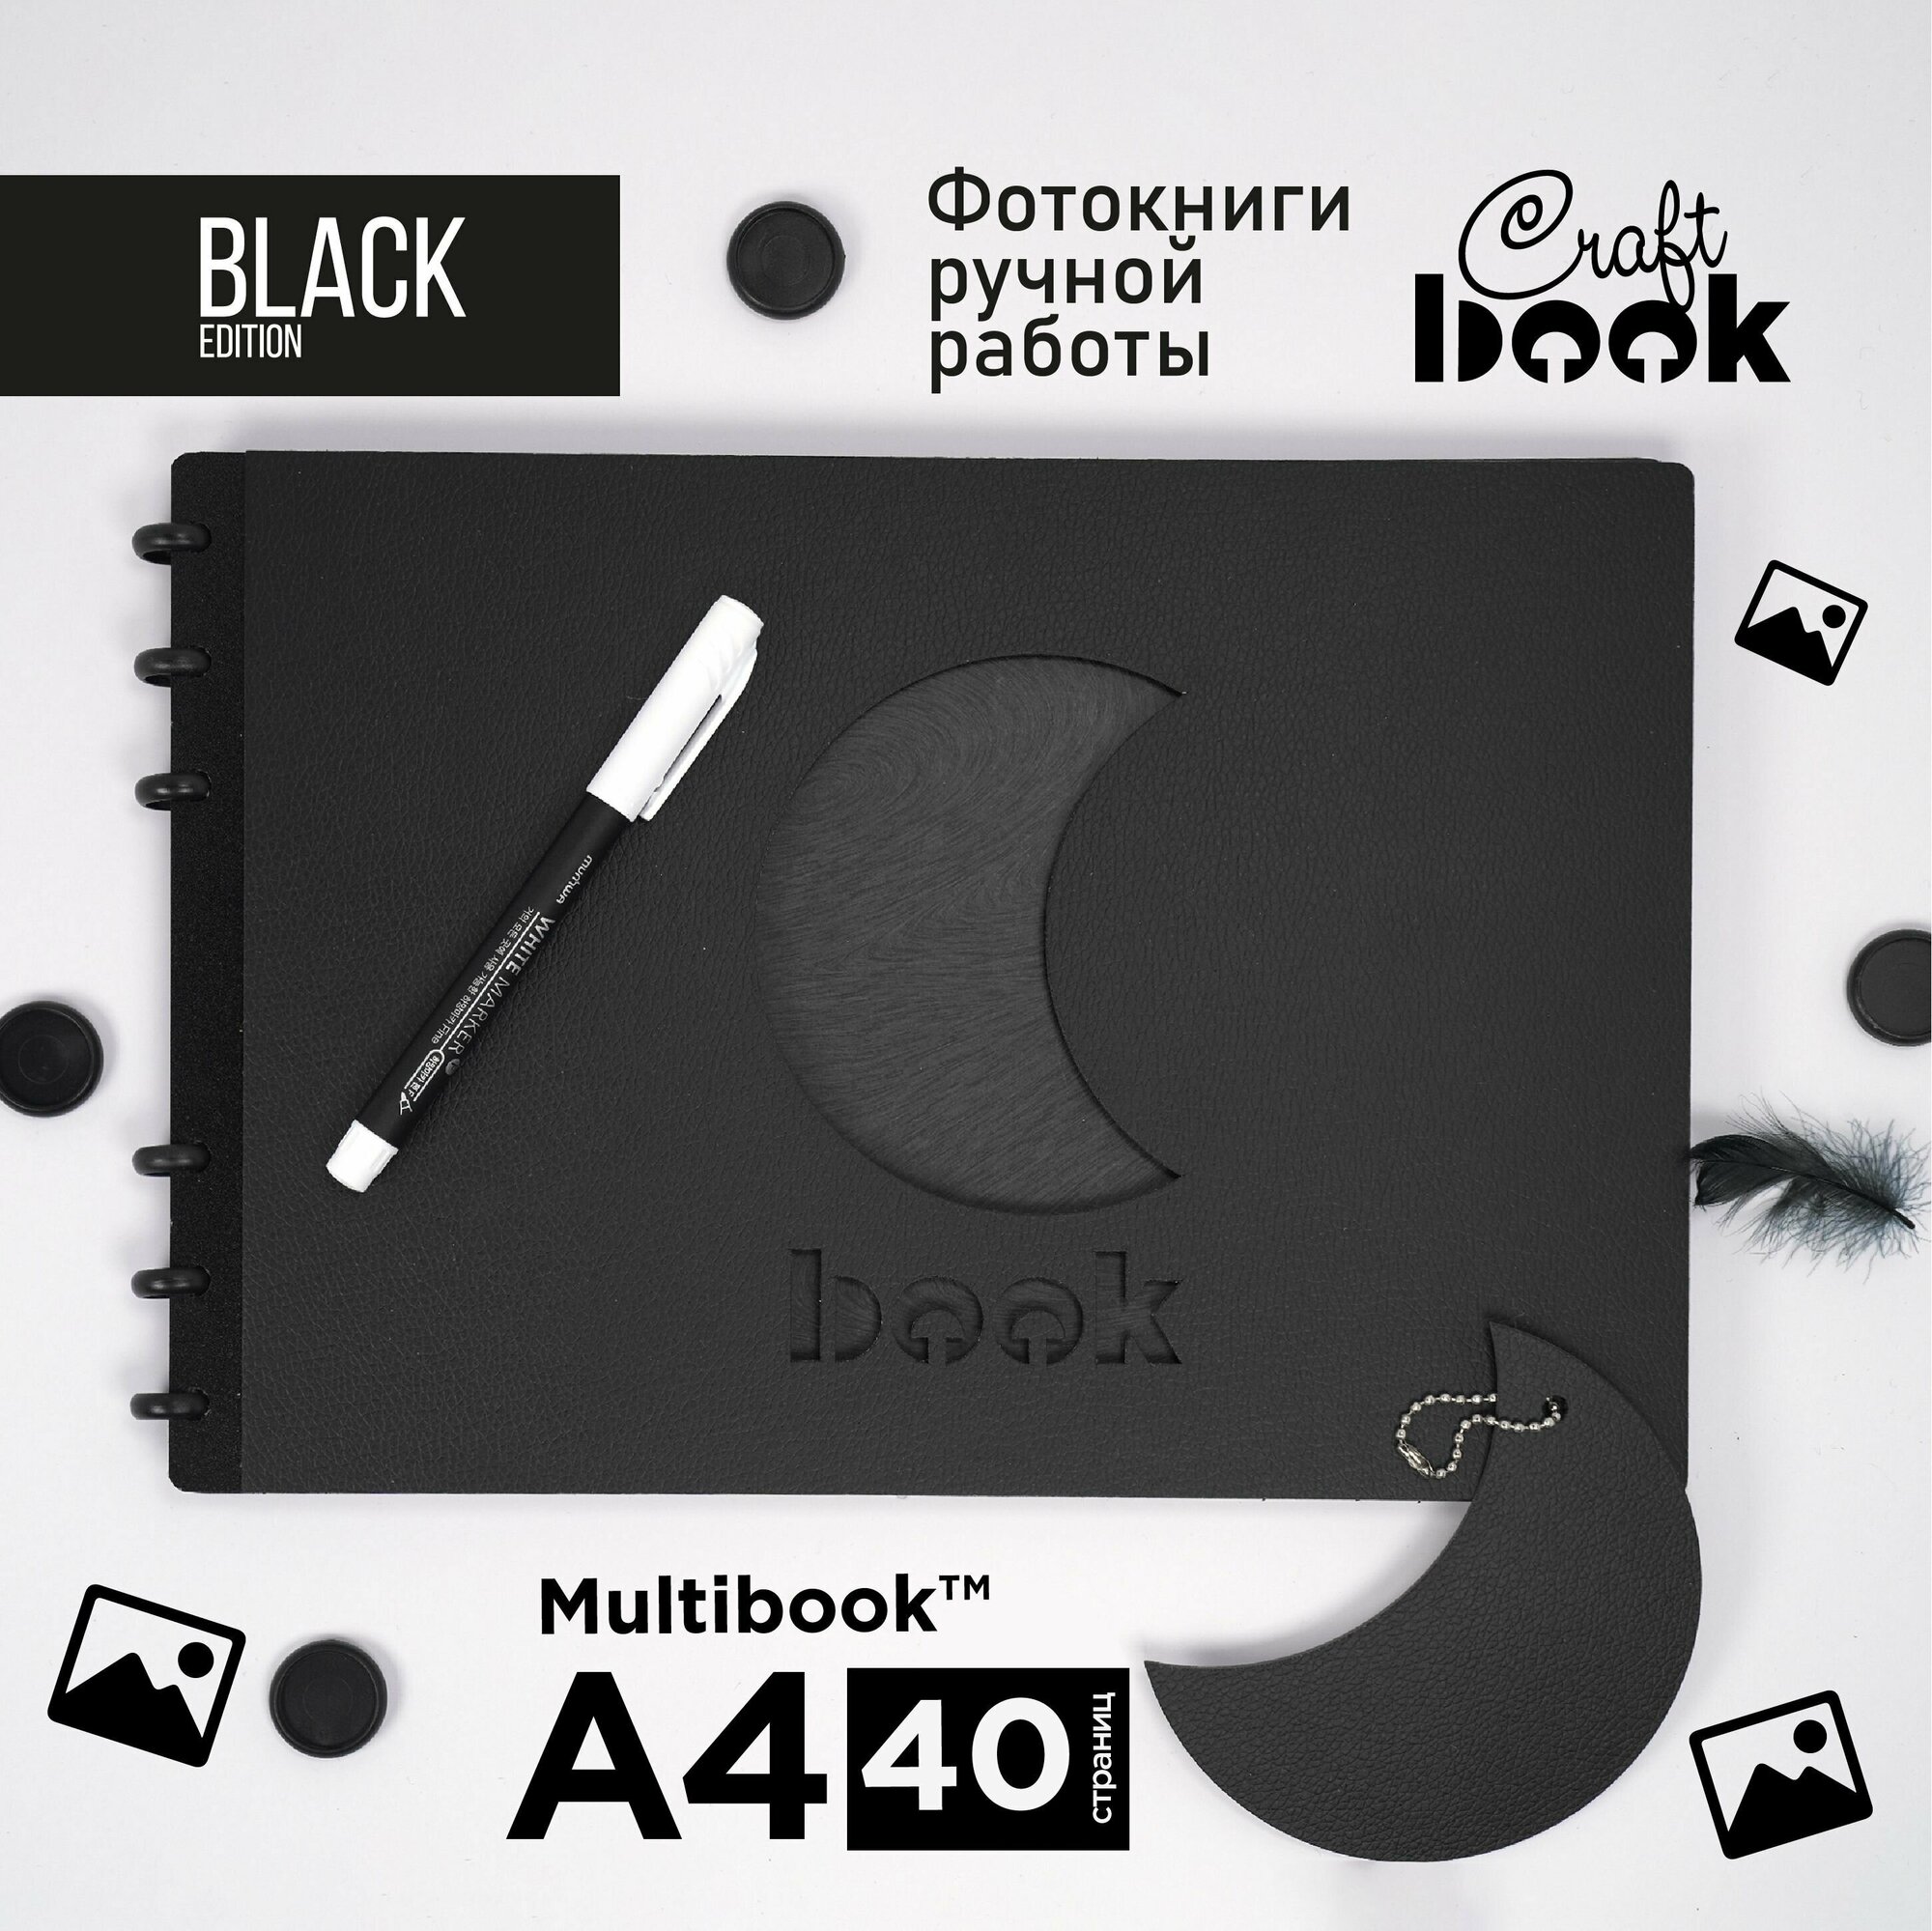 Фотоальбом Black CraftBook. Альбом А4 для фотографий и записей, 40 страниц